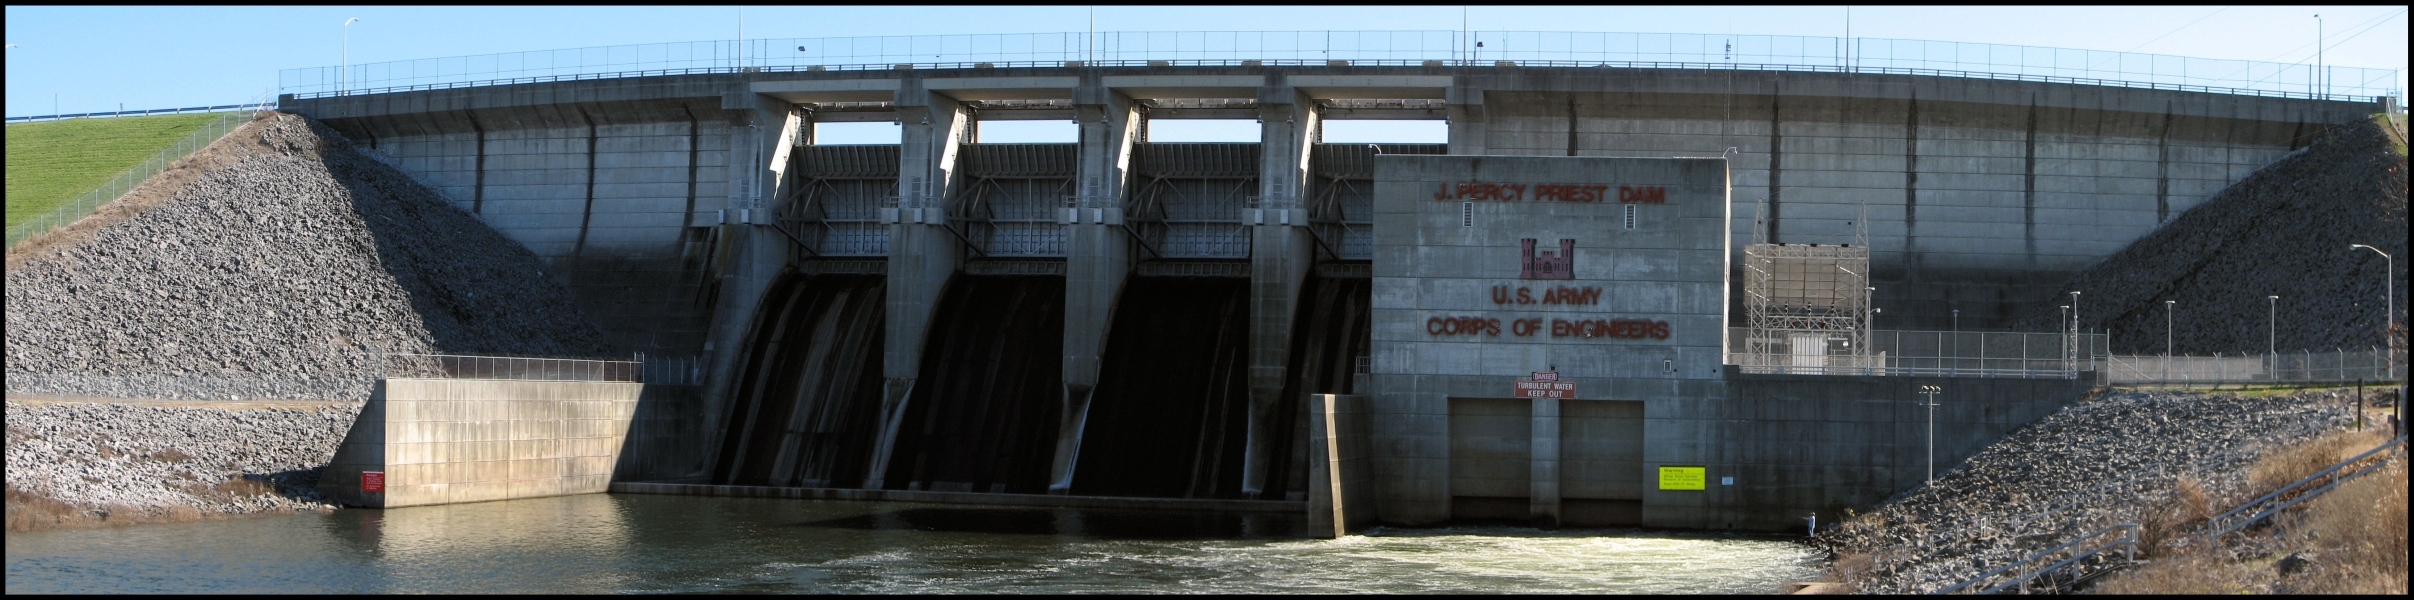 J. Percy Priest Dam